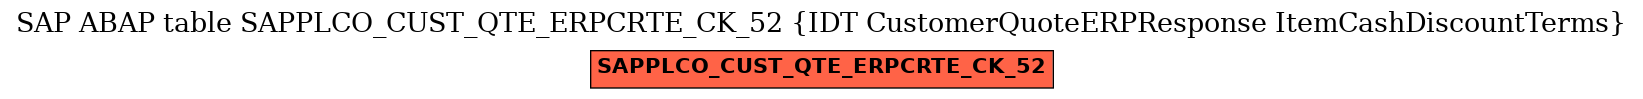 E-R Diagram for table SAPPLCO_CUST_QTE_ERPCRTE_CK_52 (IDT CustomerQuoteERPResponse ItemCashDiscountTerms)